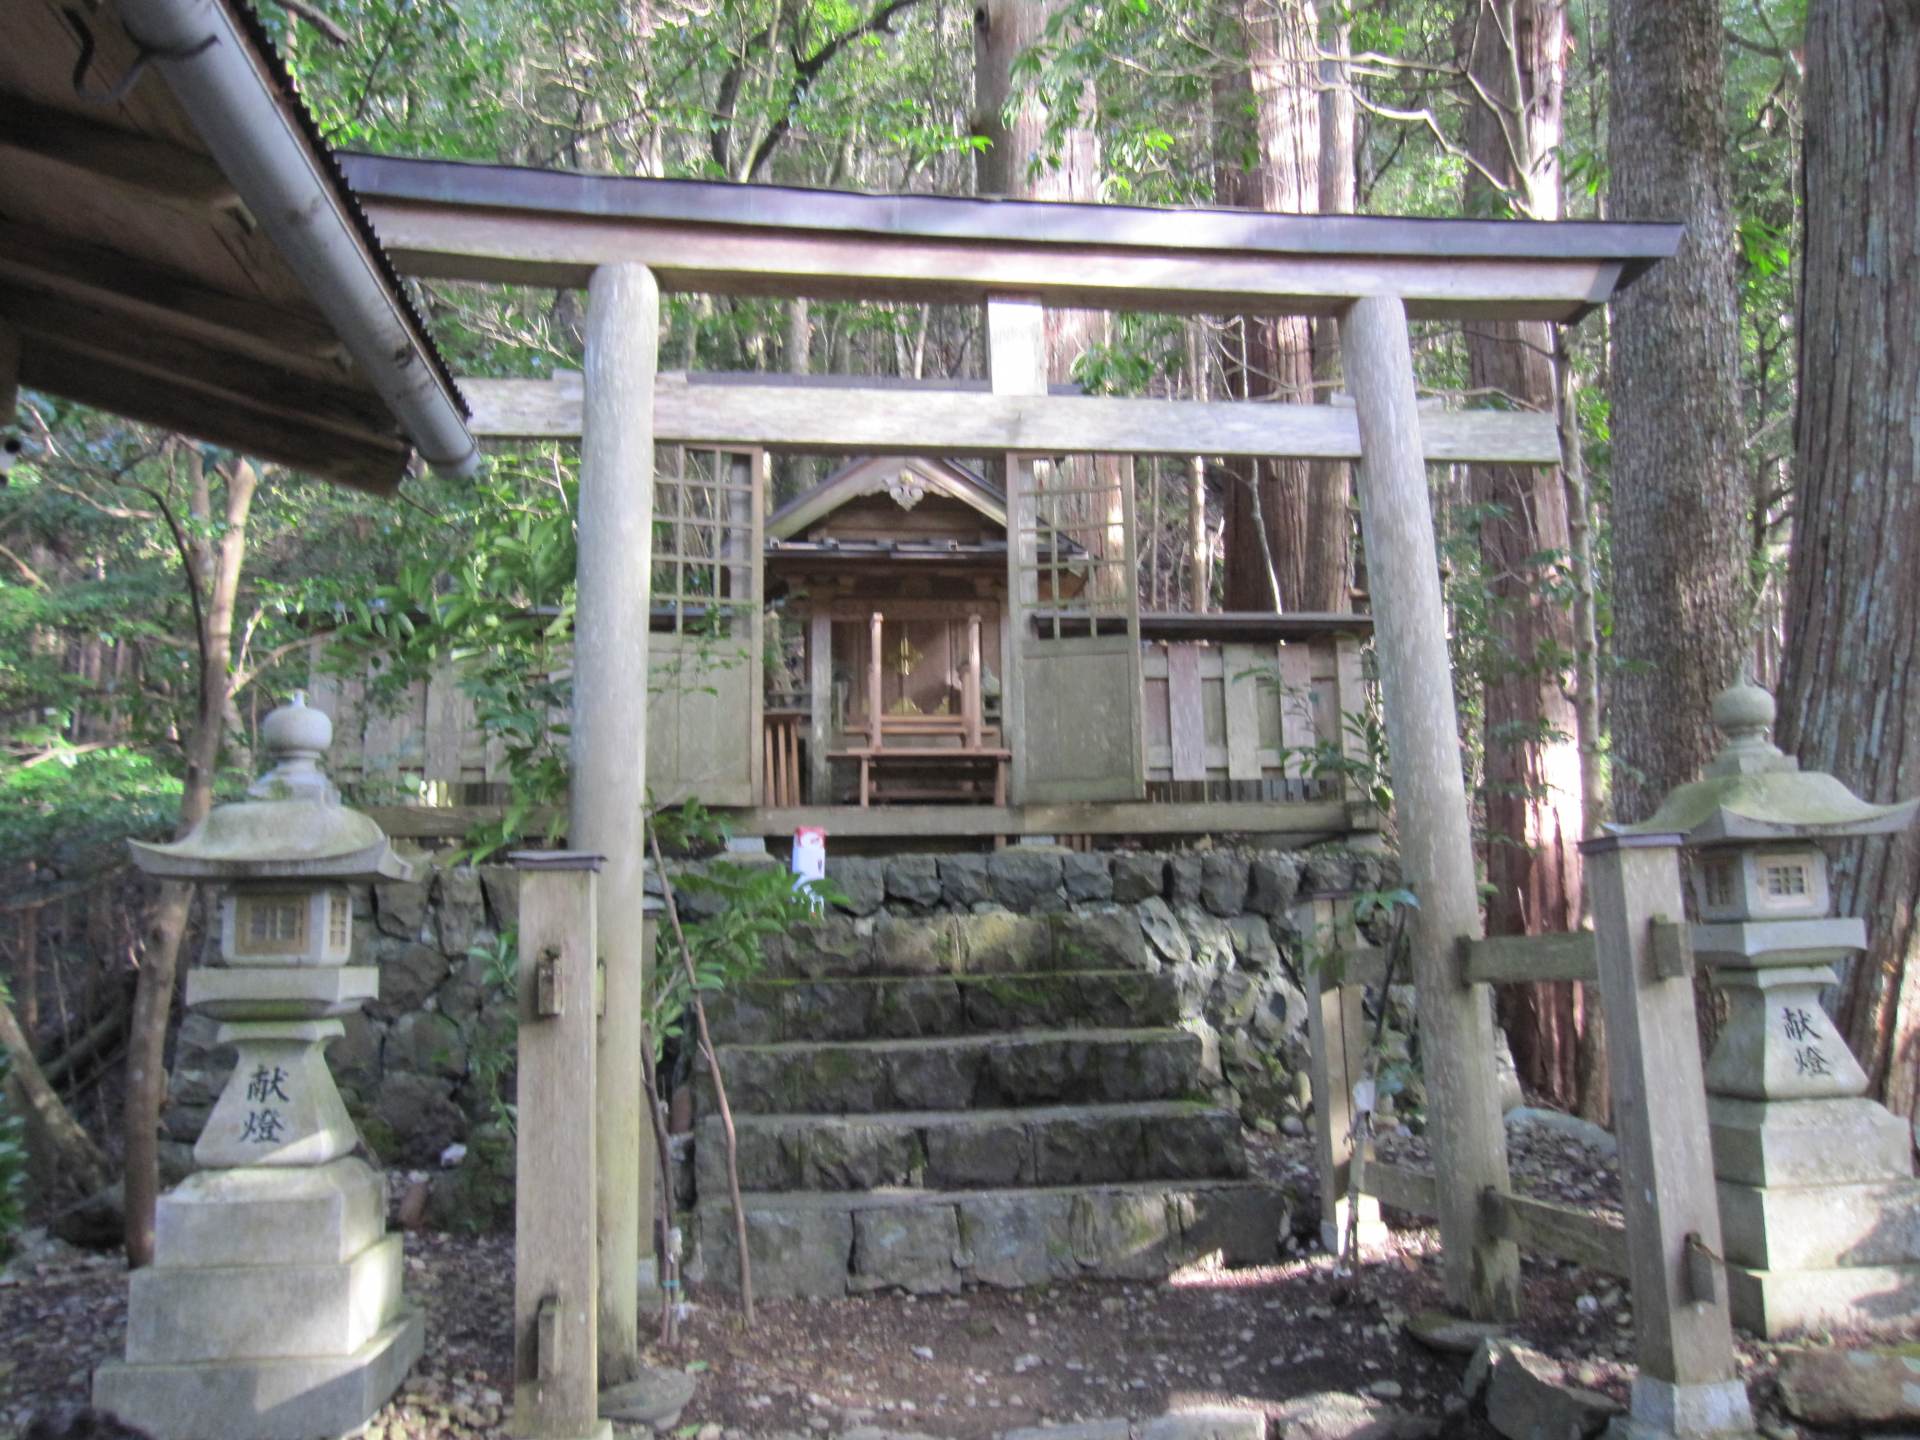 "Shinohara Odori" est dédié au sanctuaire Tenman. Il a été transmis dans la région de Shinohara, qui descend du `` Furyu Odori '' qui était populaire à la fin du Moyen Âge et au début des temps modernes.